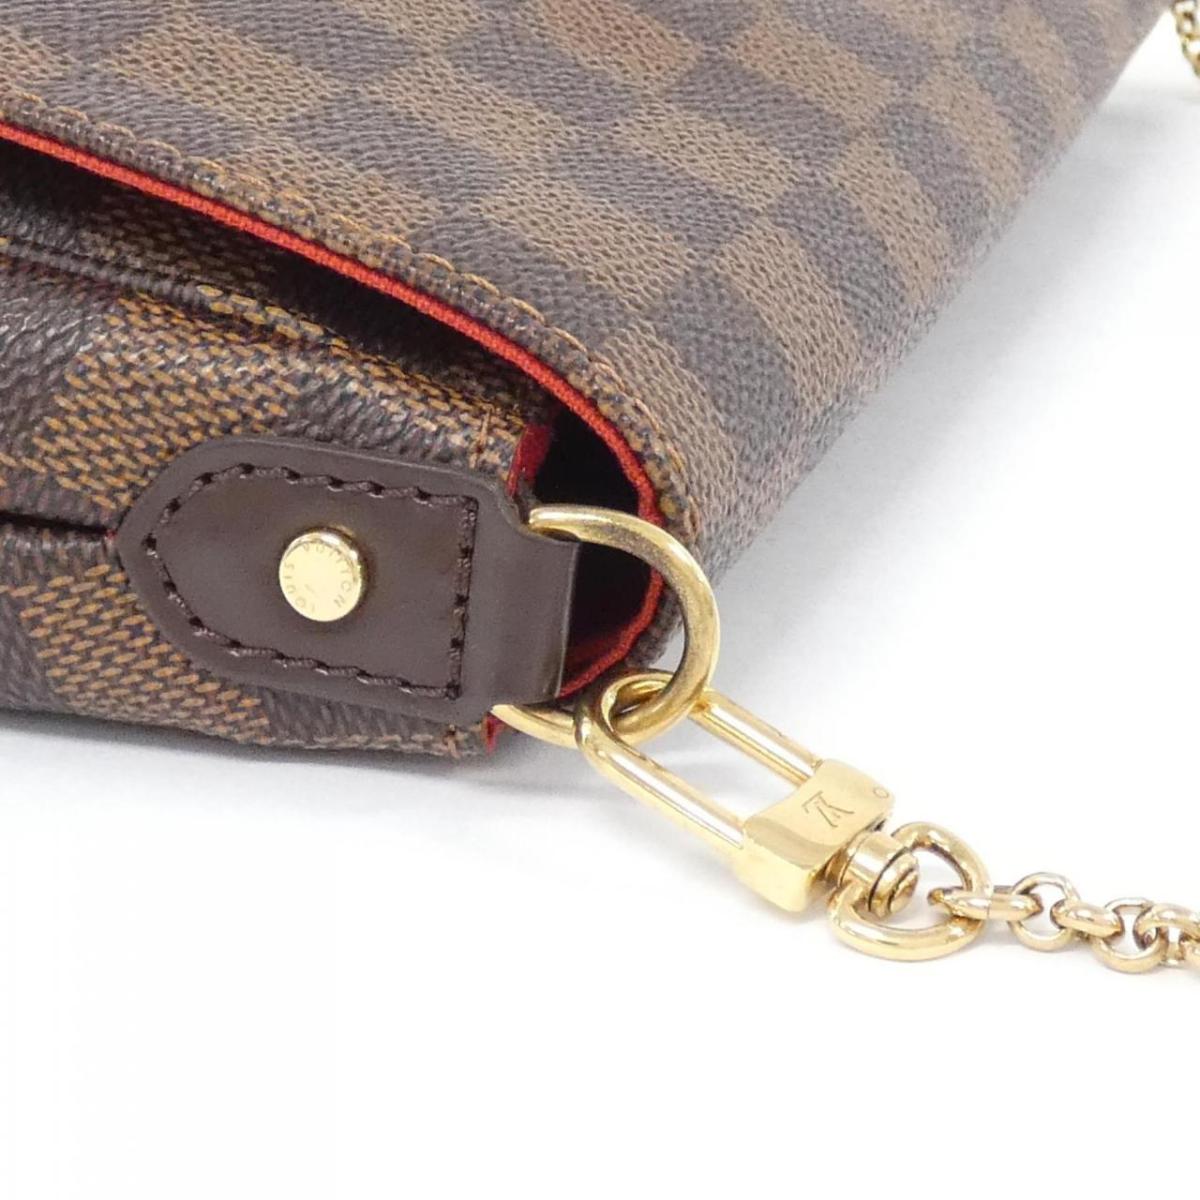 Louis Vuitton Damier Feverit MM N41129 Shoulder Bag